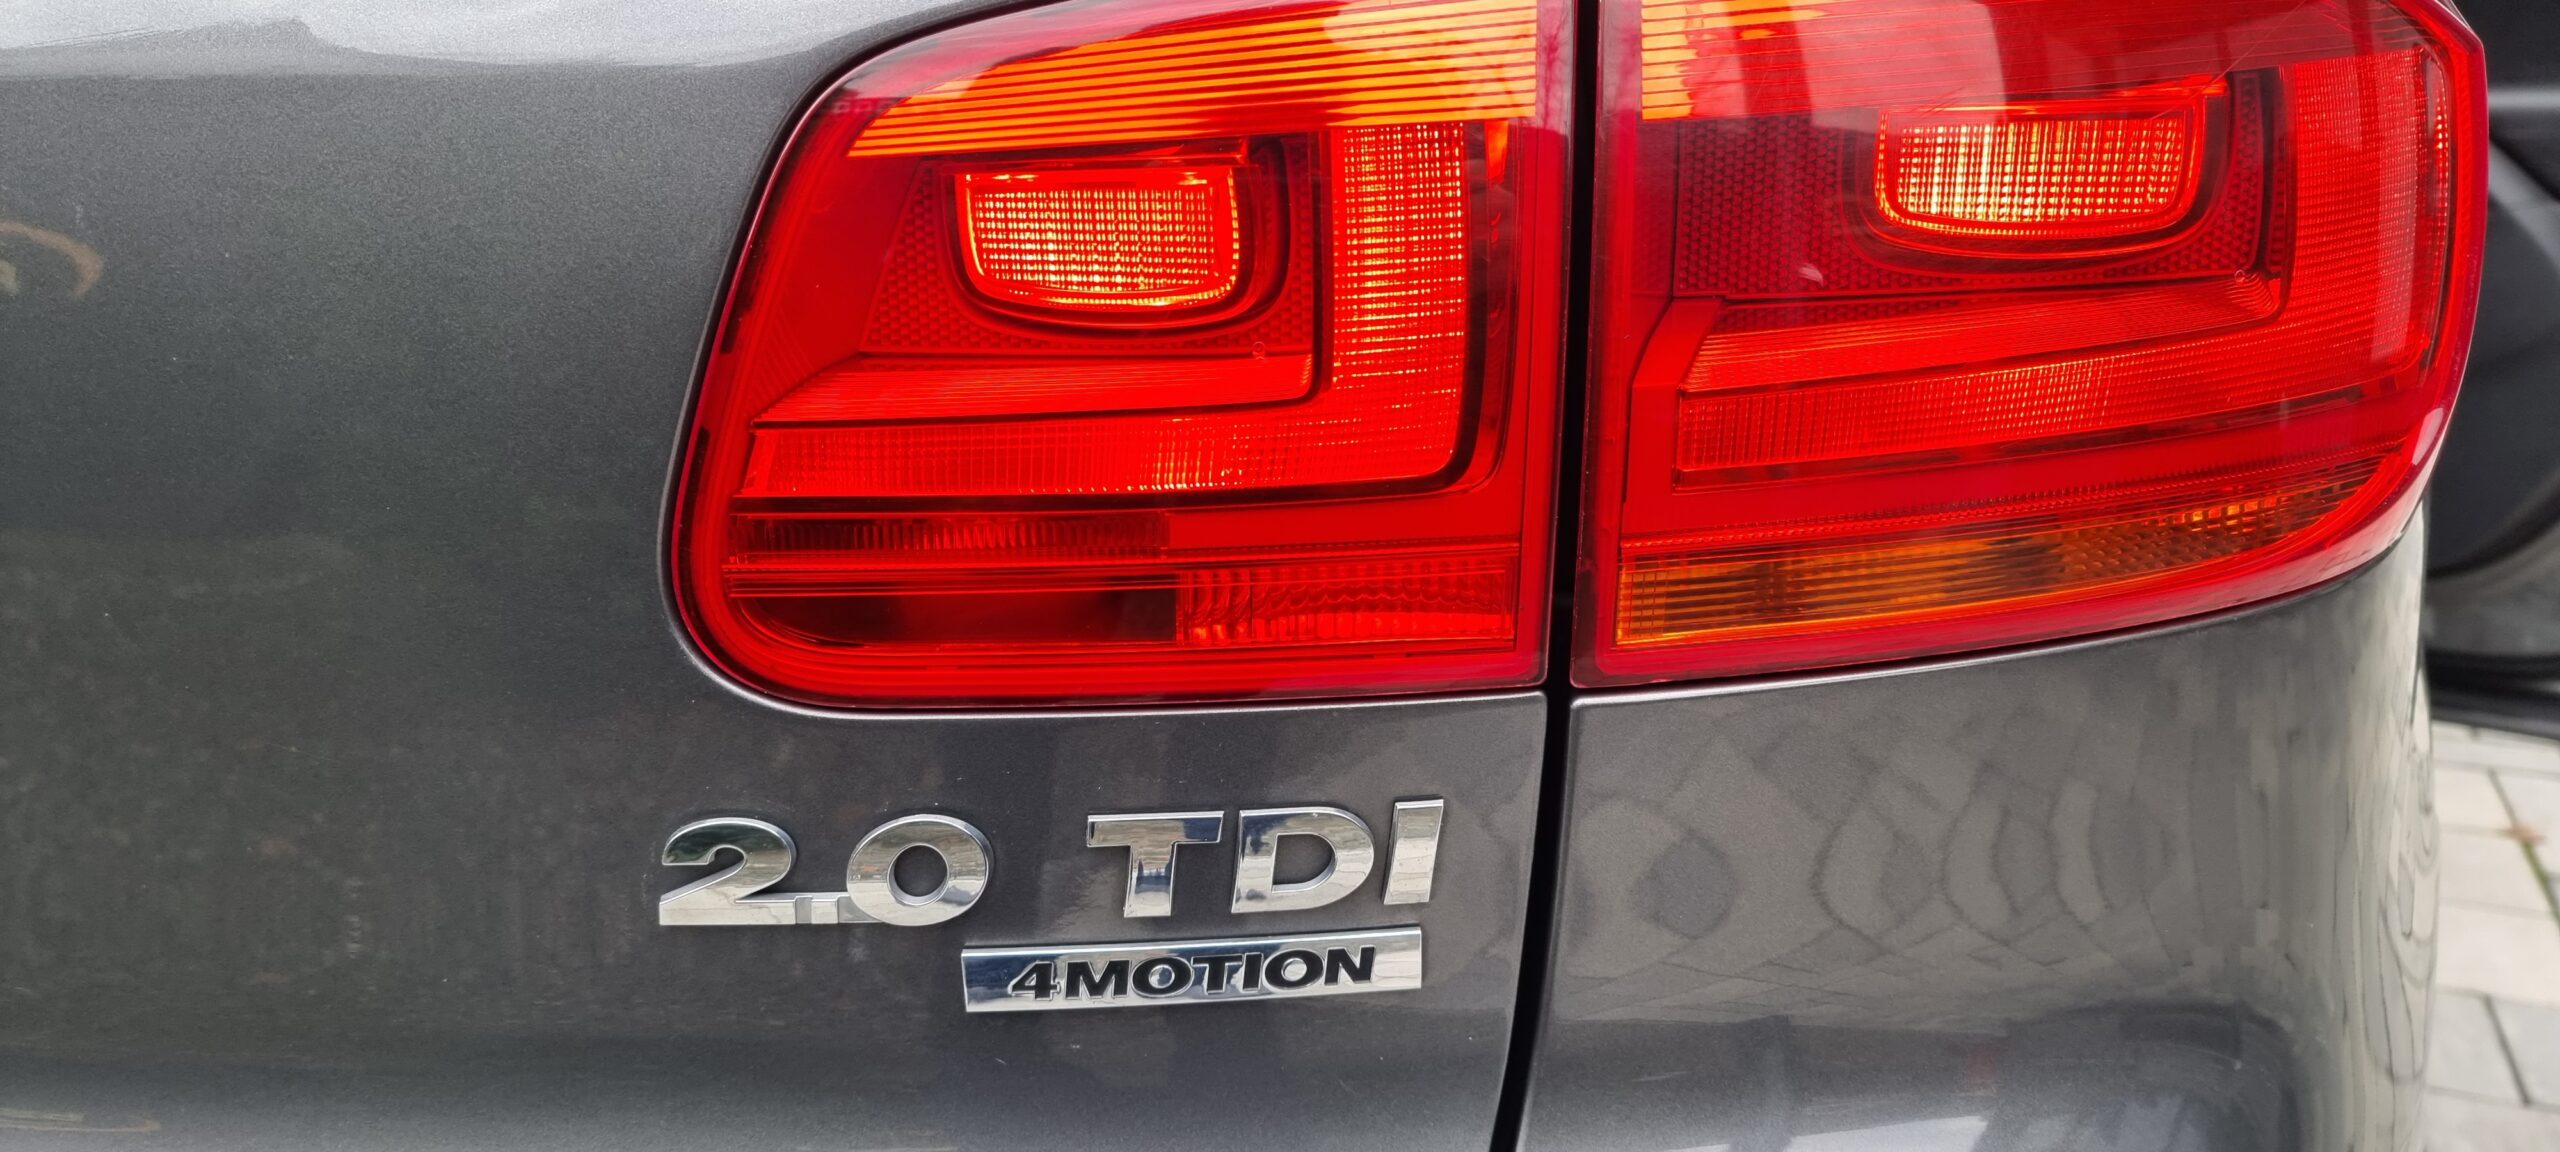 VW TIGUAN 4 MOTION, 2.0 TDI, 140 CP, AN 2012